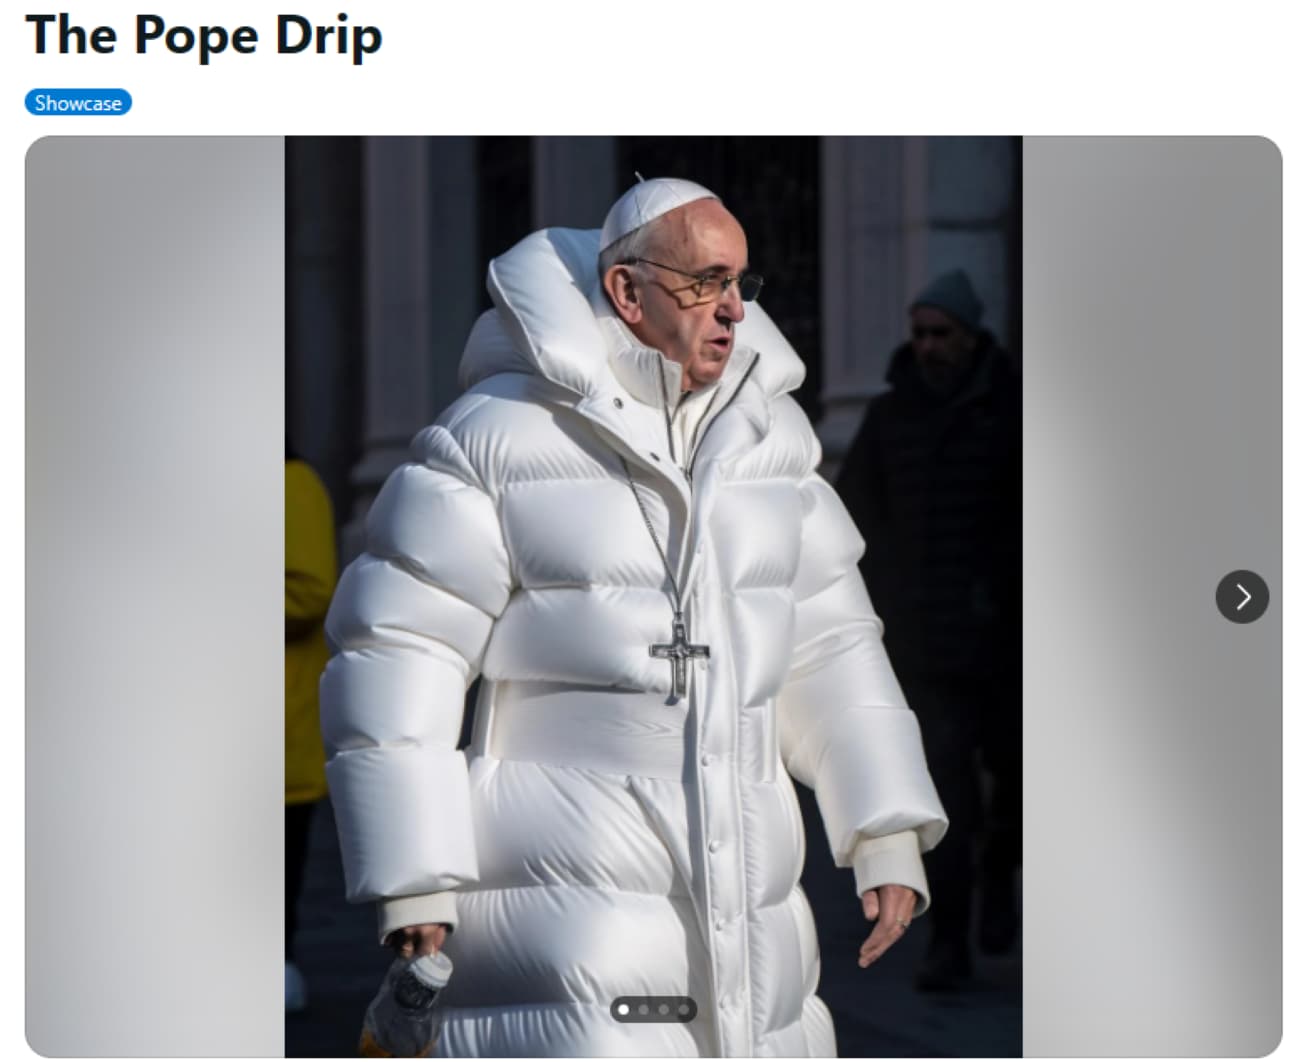 The Pope Drip - KI generiertes Bild des Papstes - Screenshot von Reddit